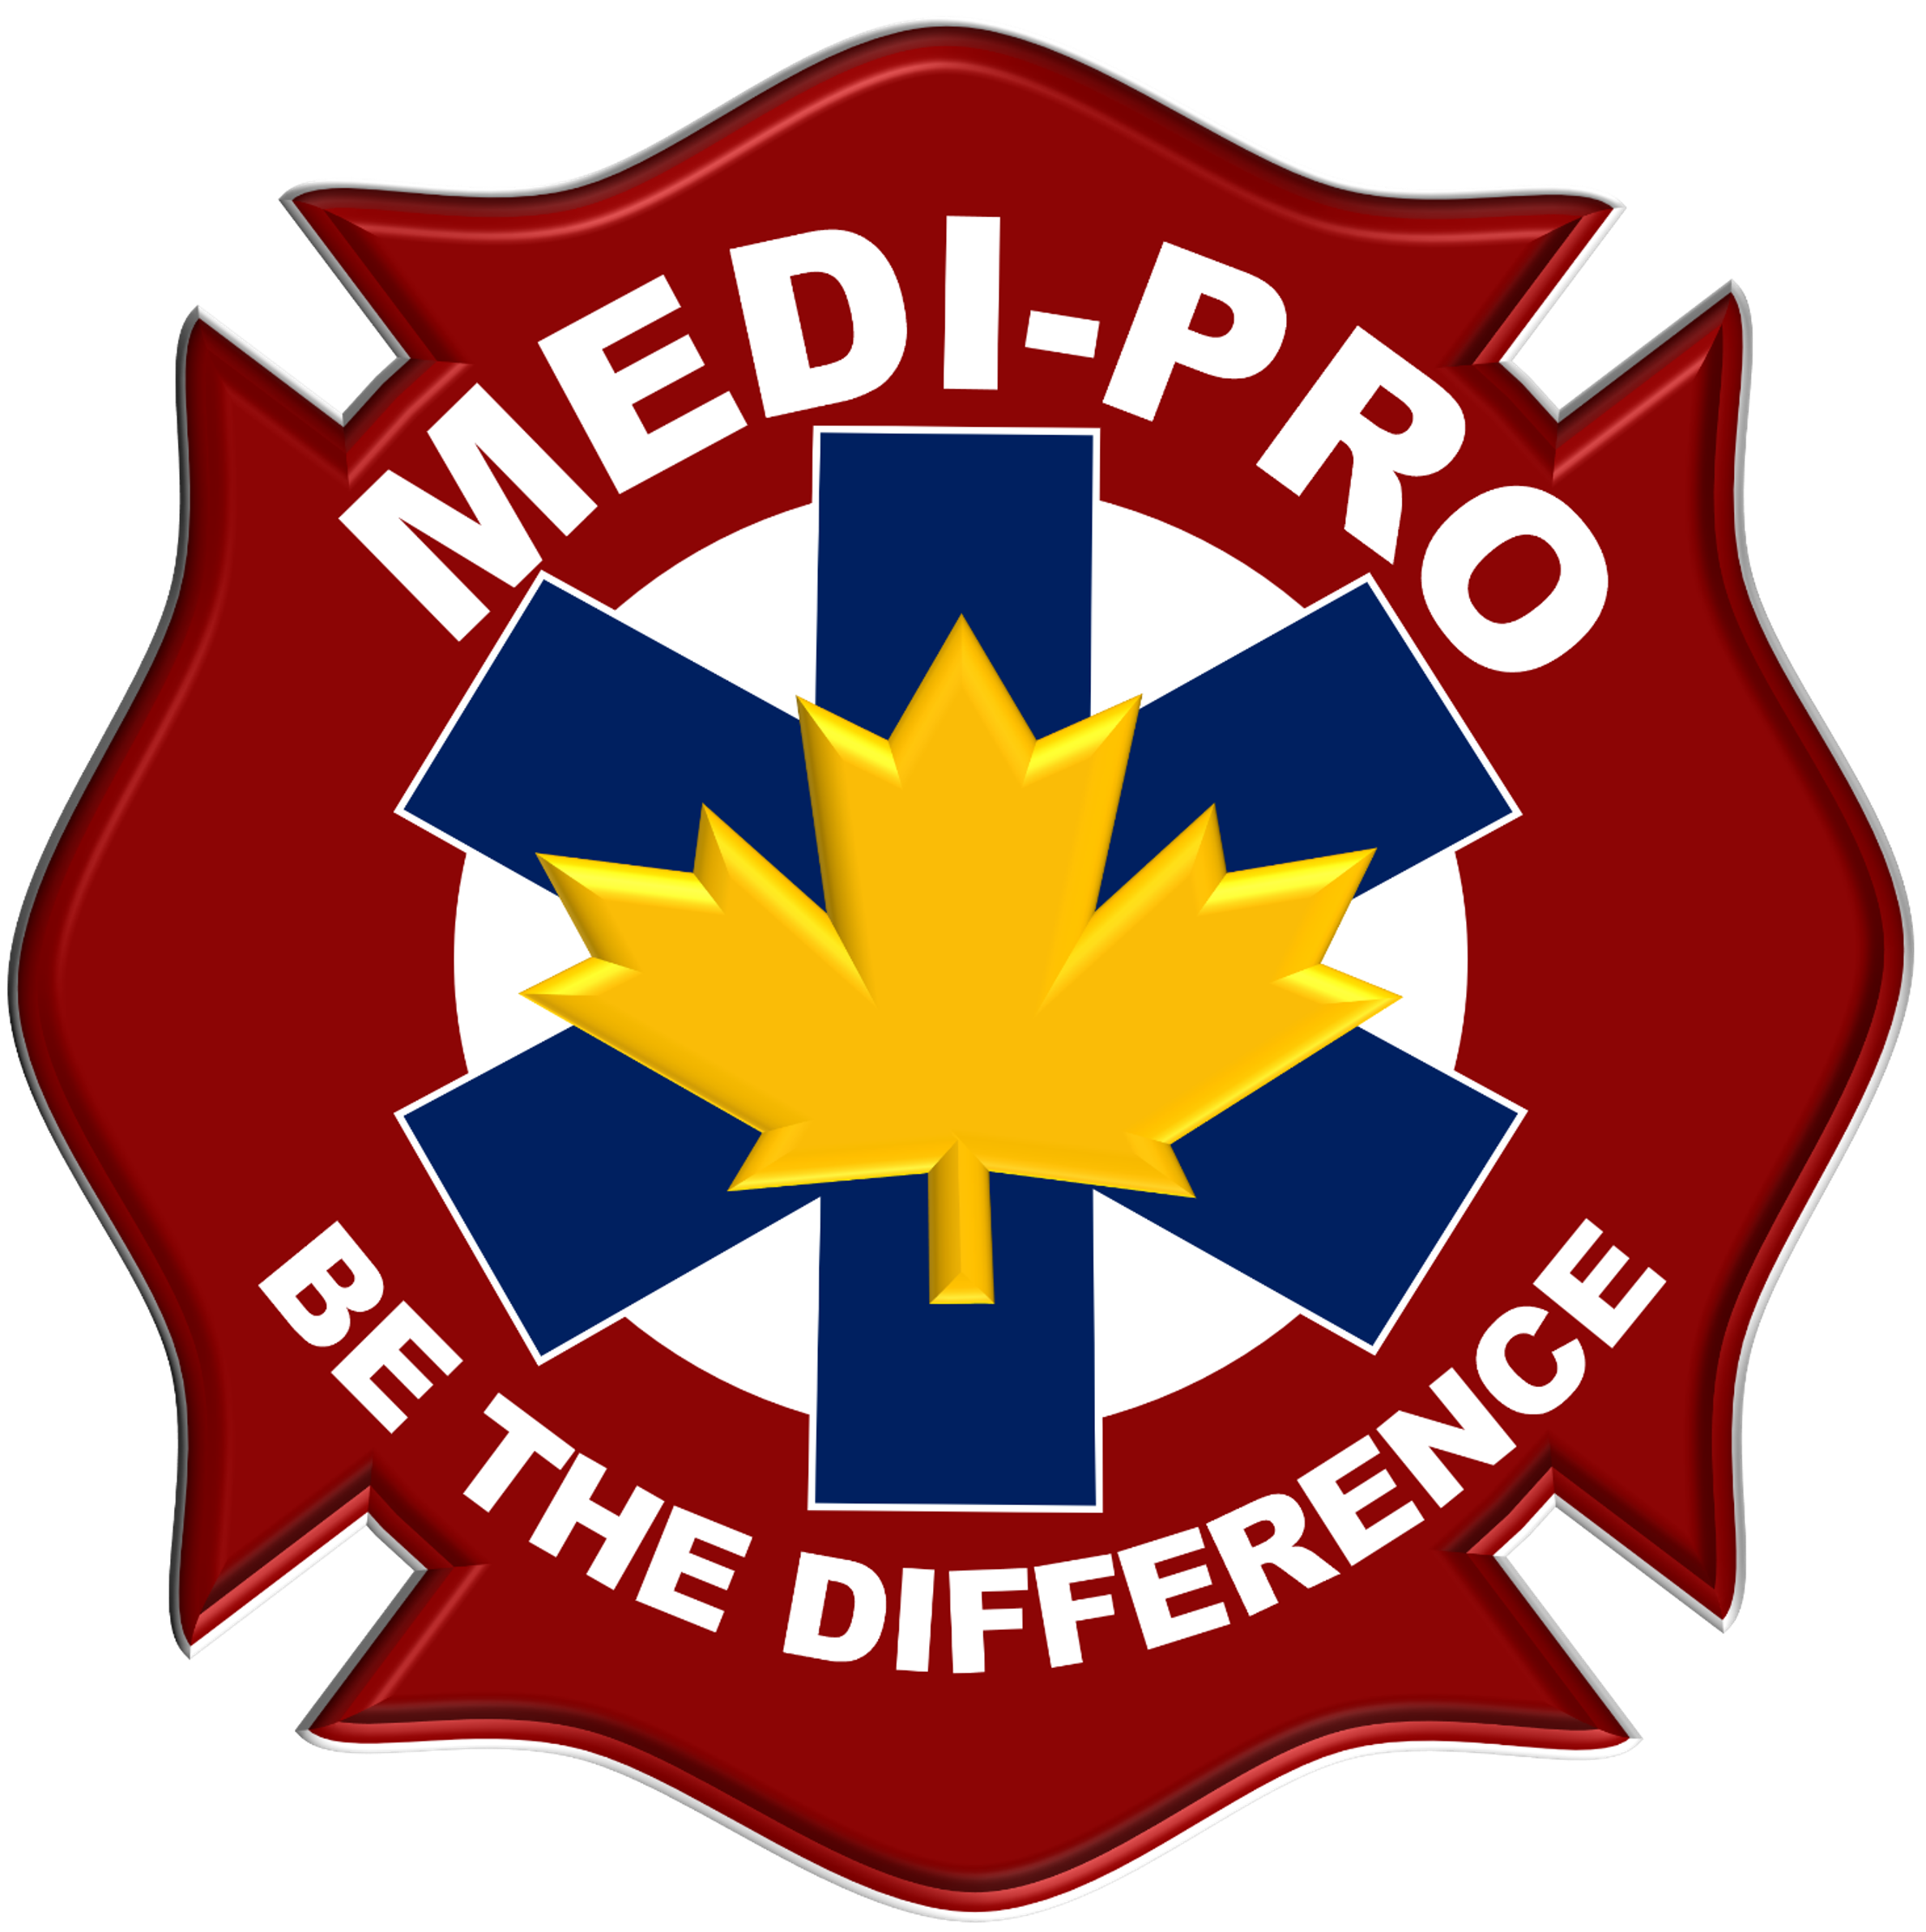 Medi-Pro First Aid in Kelowna, BC